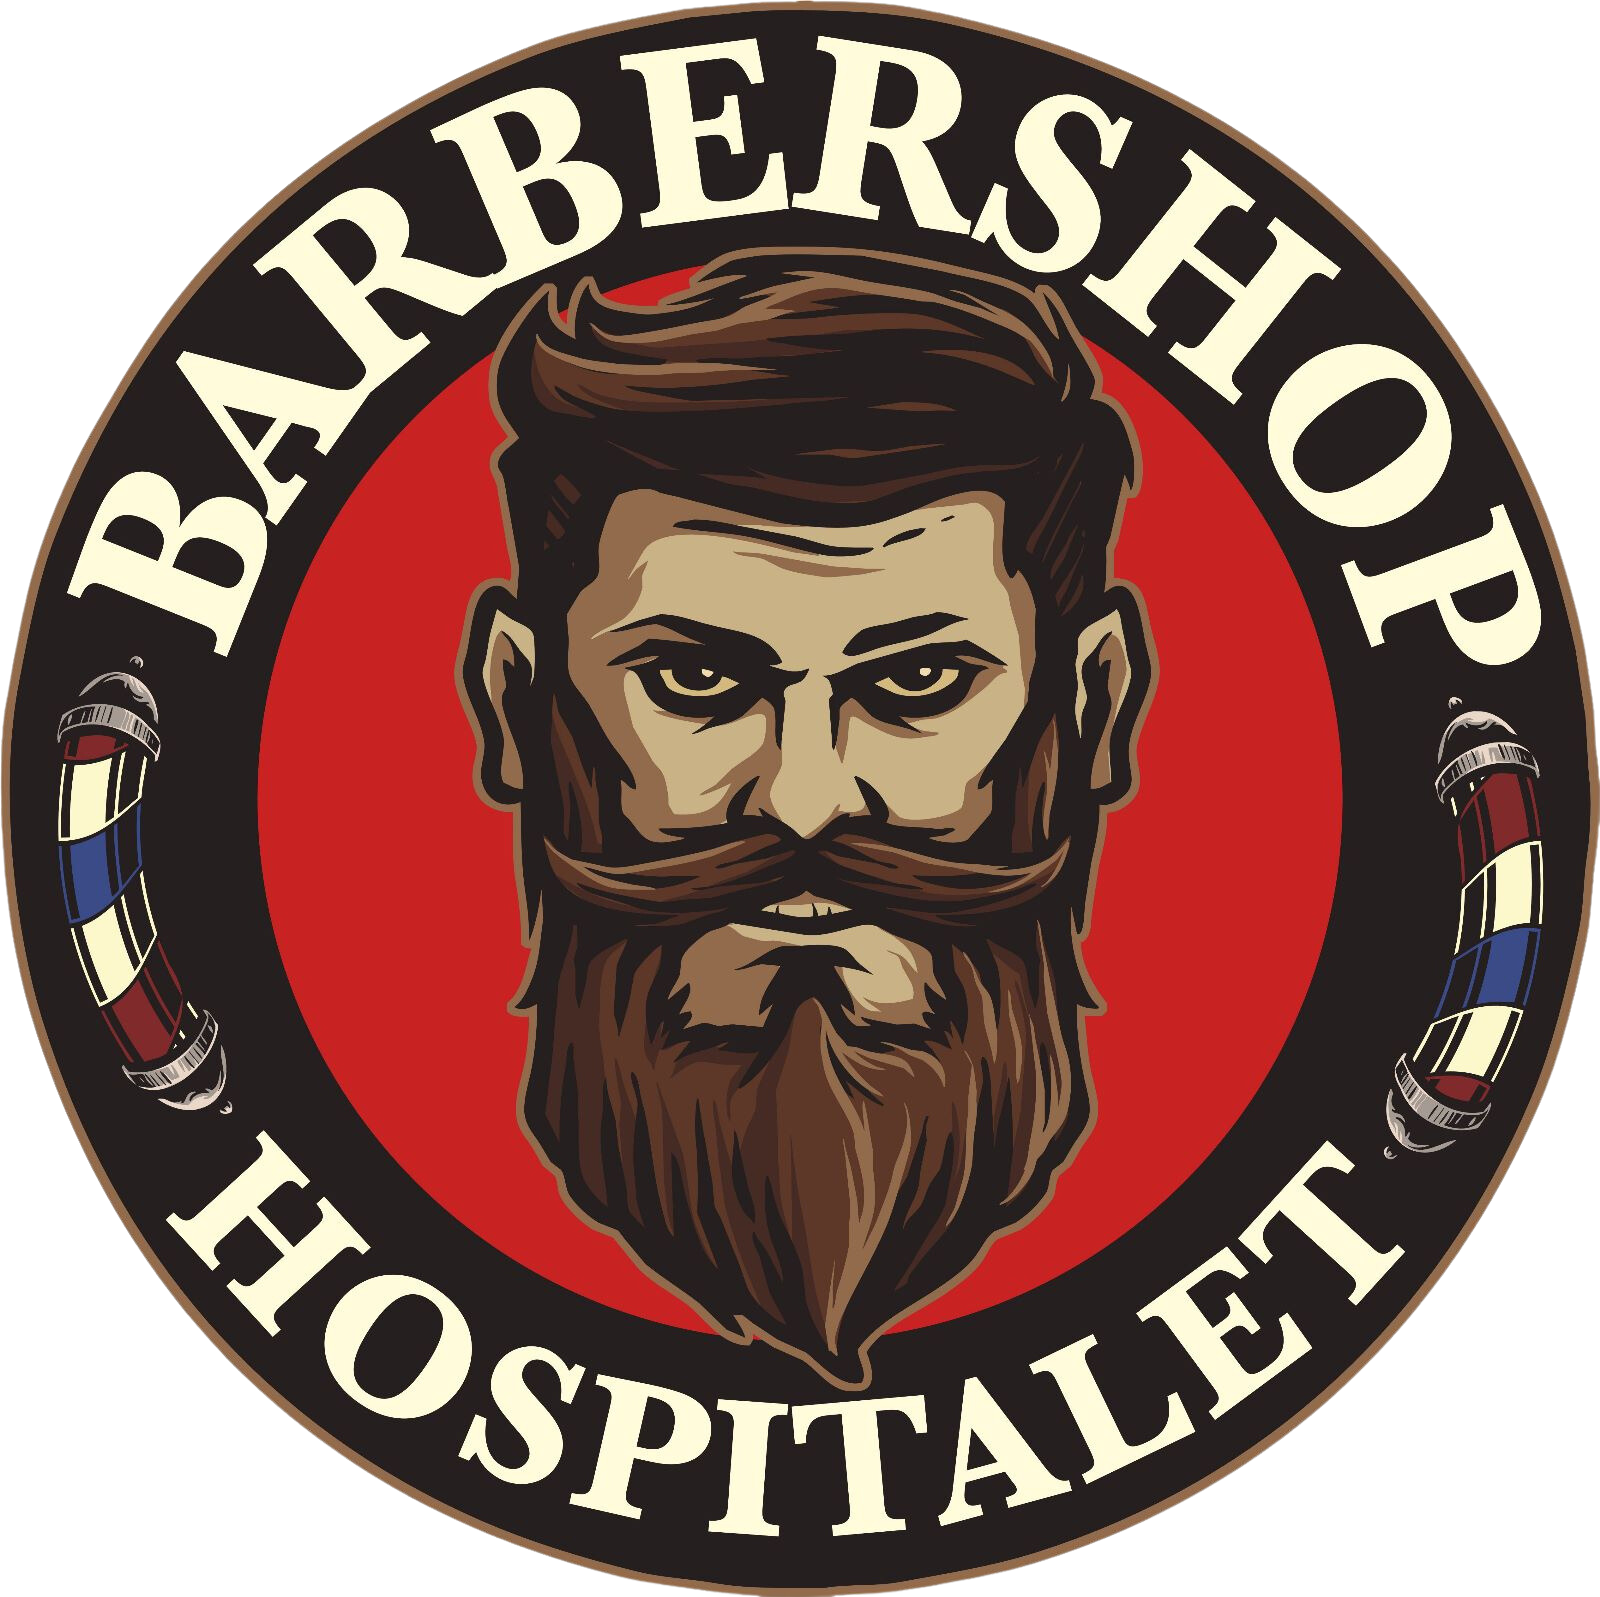 Barber Shop Hospitalet